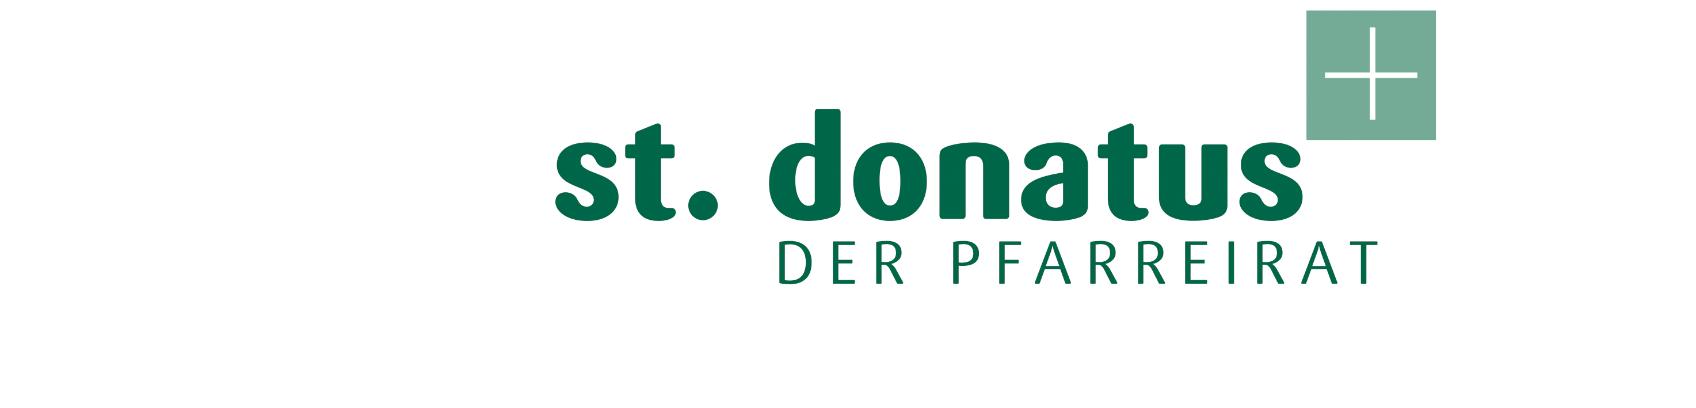 Donatus-Pfarreirat (c) St. Donatus